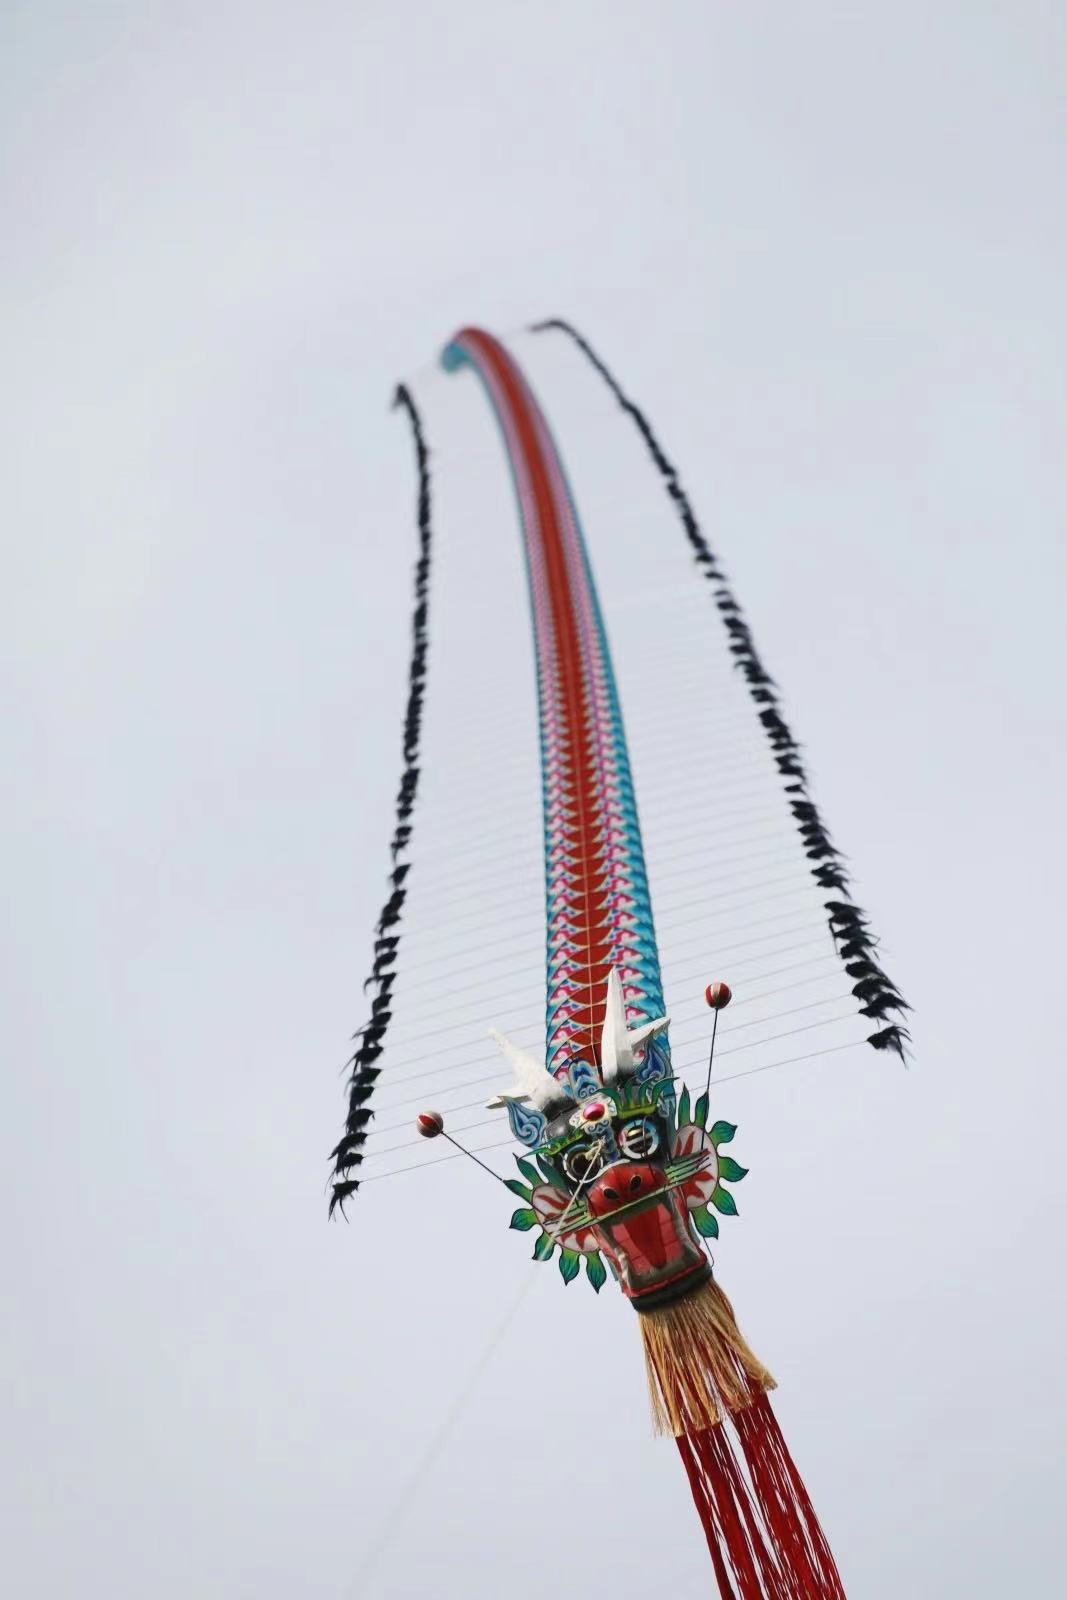 弘扬优秀传统文化第九届北京国际风筝节国际风筝邀请赛举行